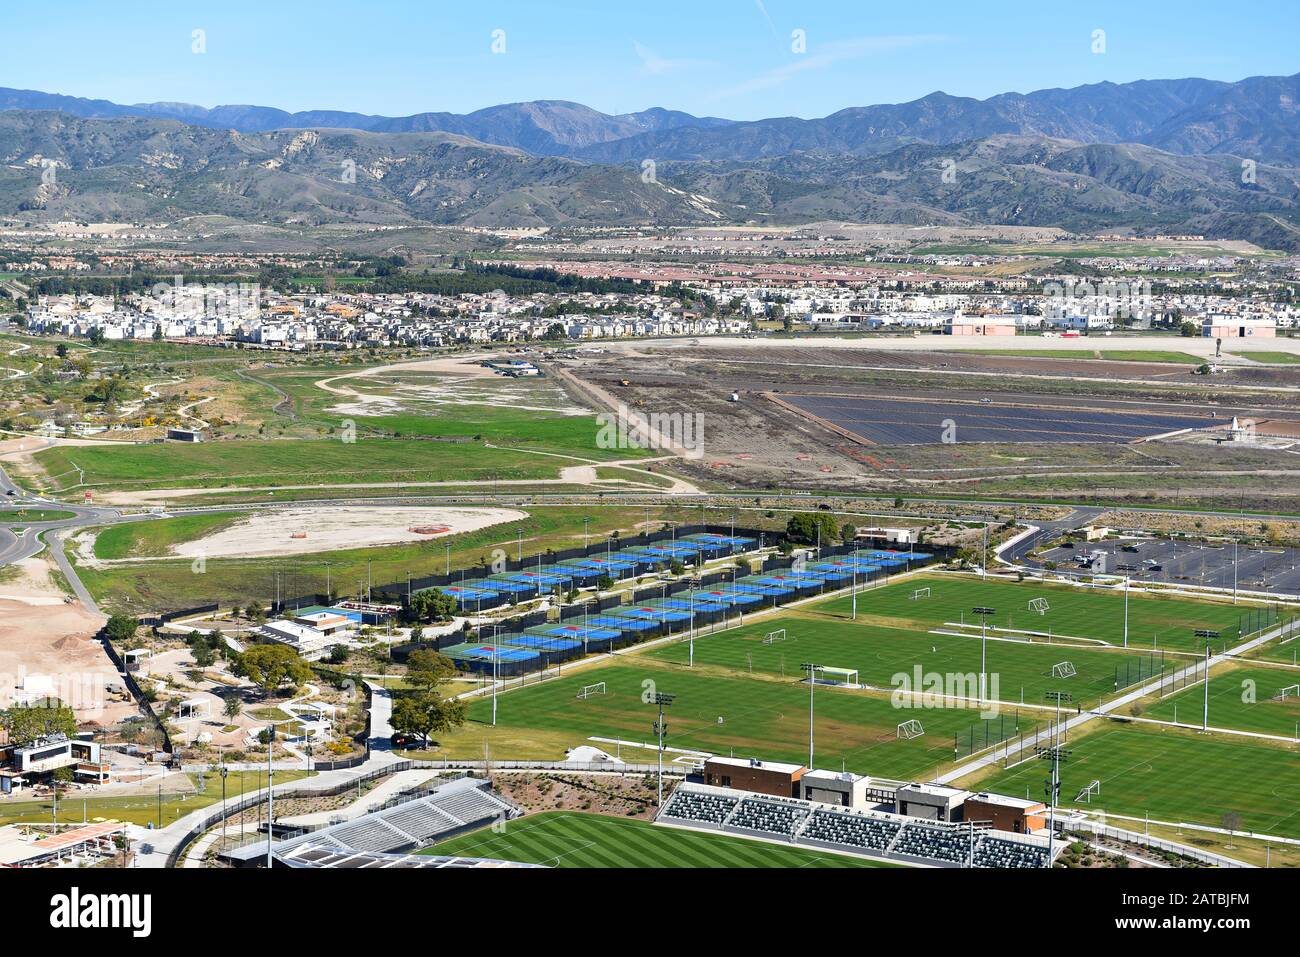 Irvine, CALIFORNIE - 31 JAN 2020: Vue aérienne du tennis Facility, terrains de football avec de nouvelles maisons et les montagnes de santa Ana au loin. Banque D'Images